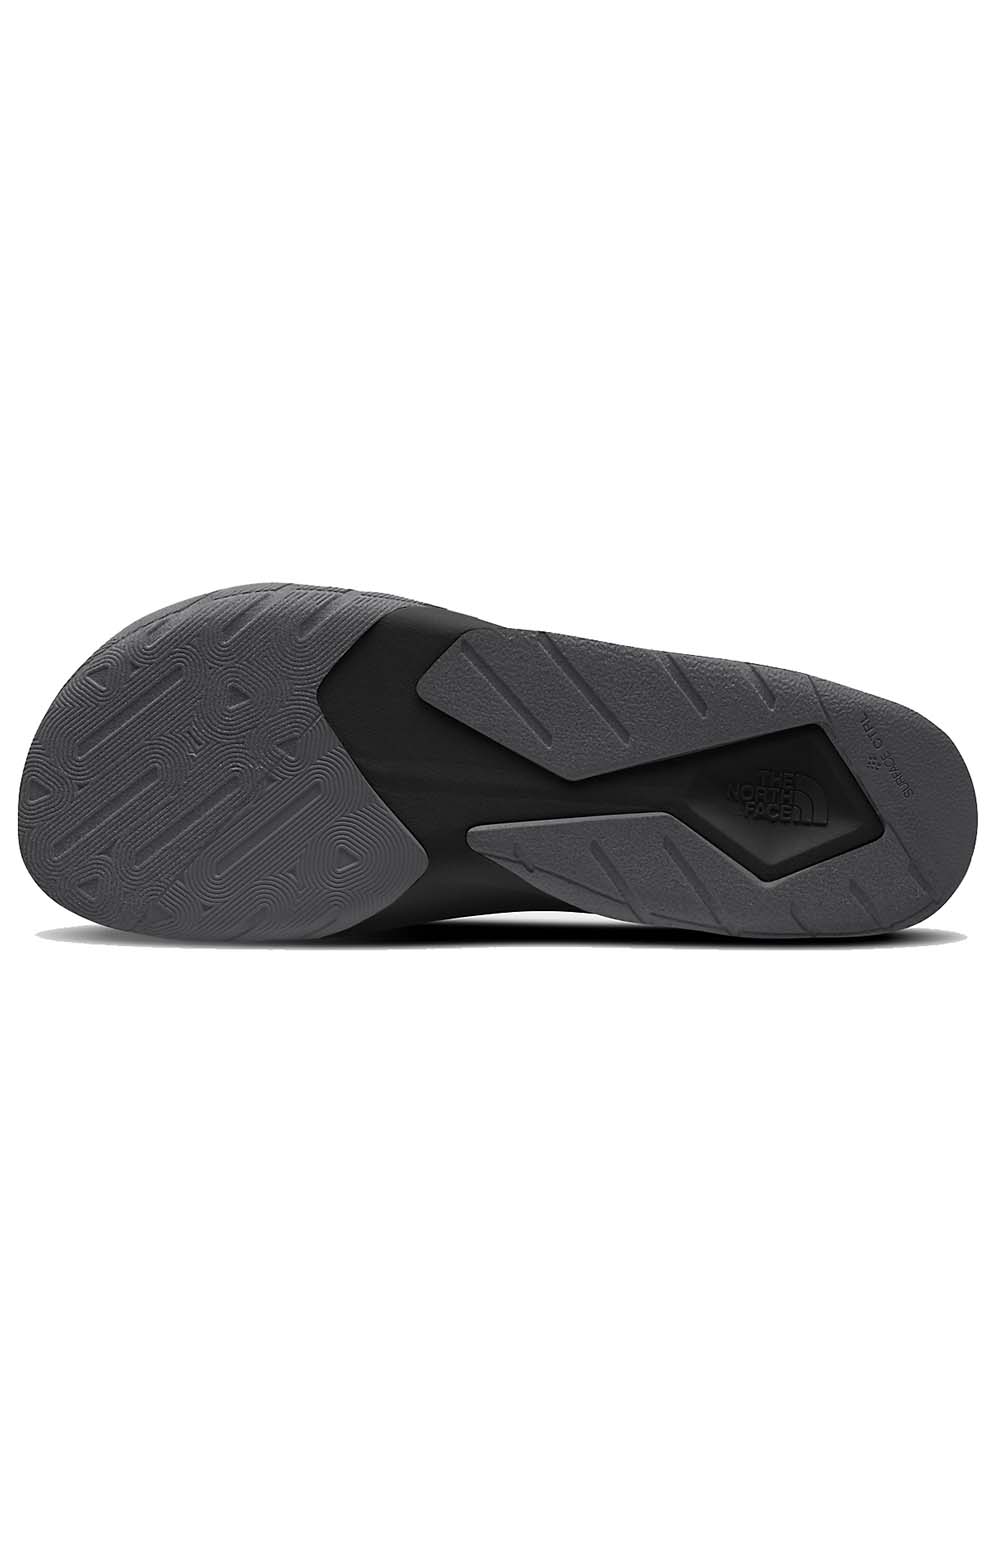 (NF0A5JC6KT0) Skeena Sport Sandals - TNF Black/Asphalt Grey